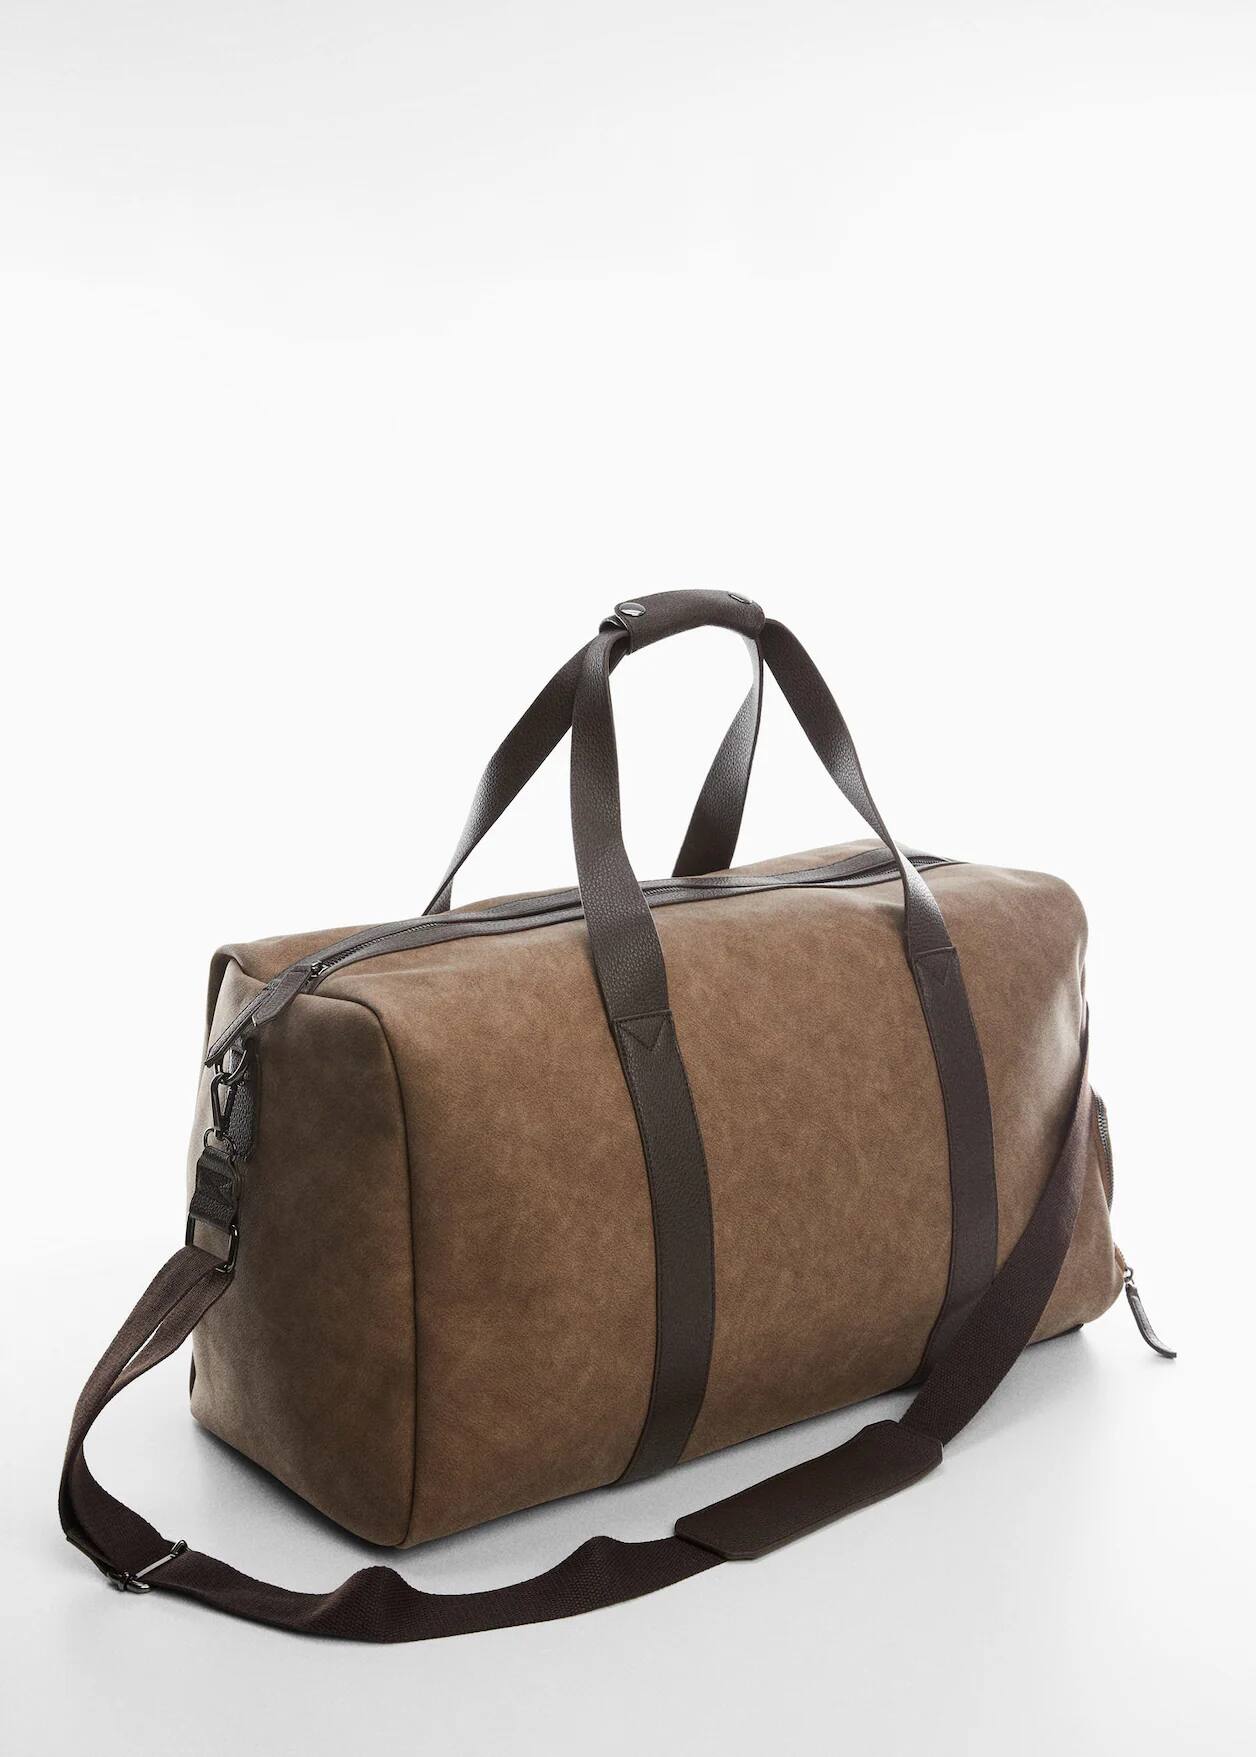 Una bolsa de viaje marrón